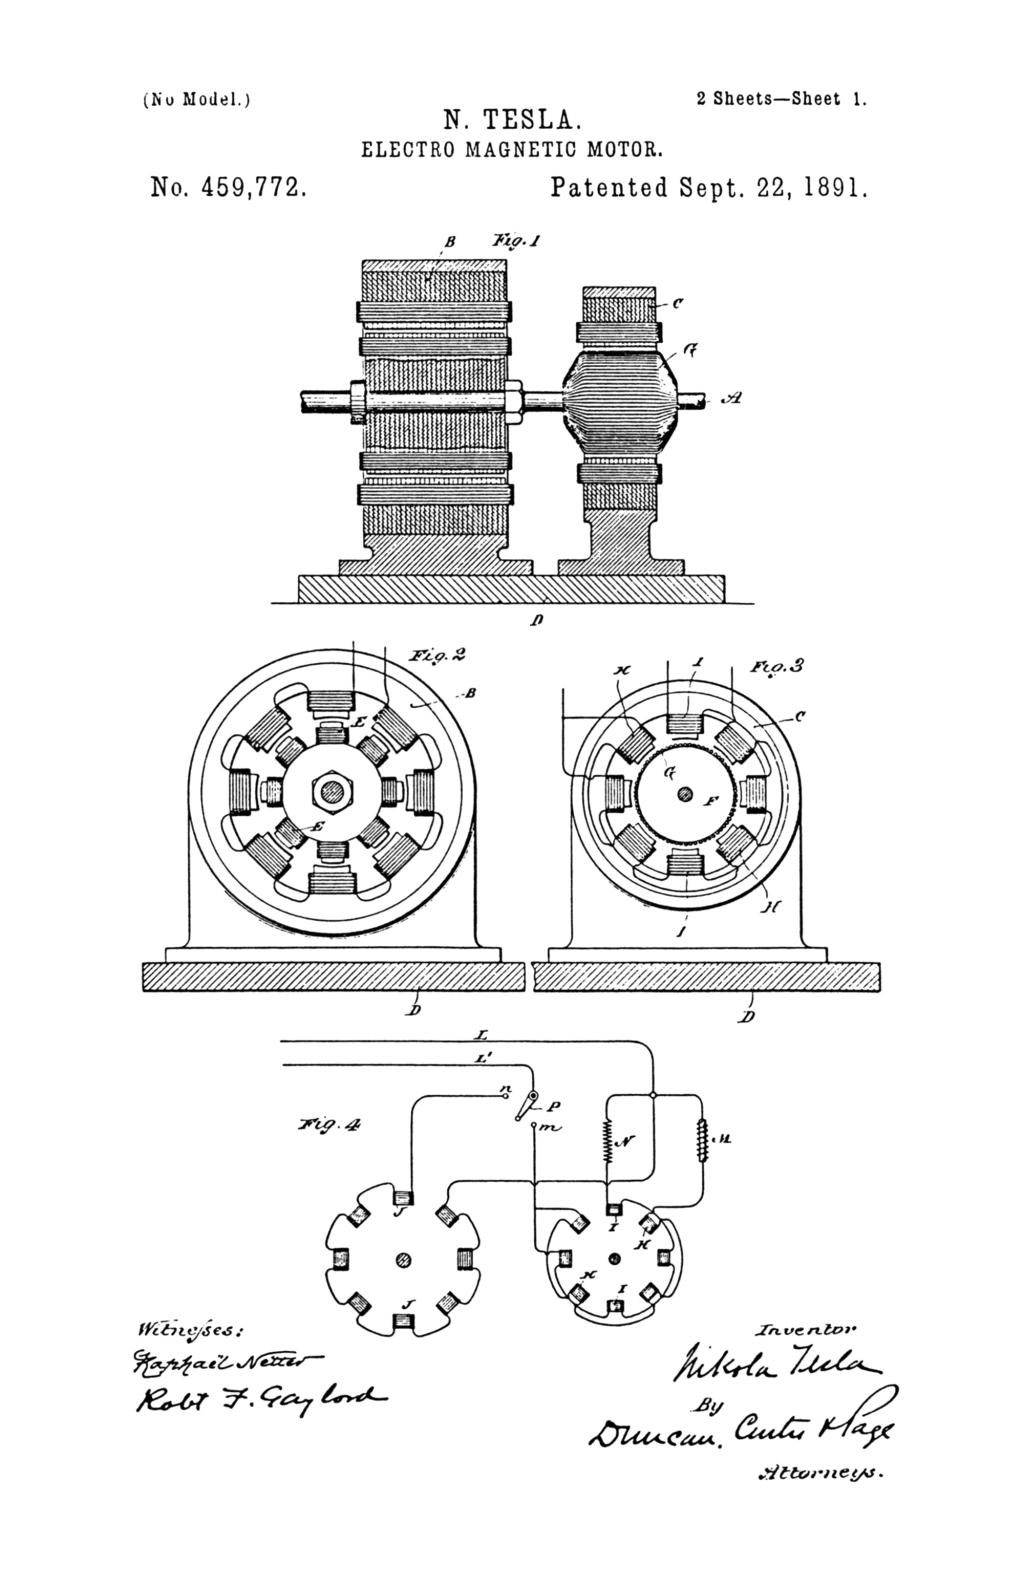 Nikola Tesla U.S. Patent 459,772 - Electro-Magnetic Motor - Image 1